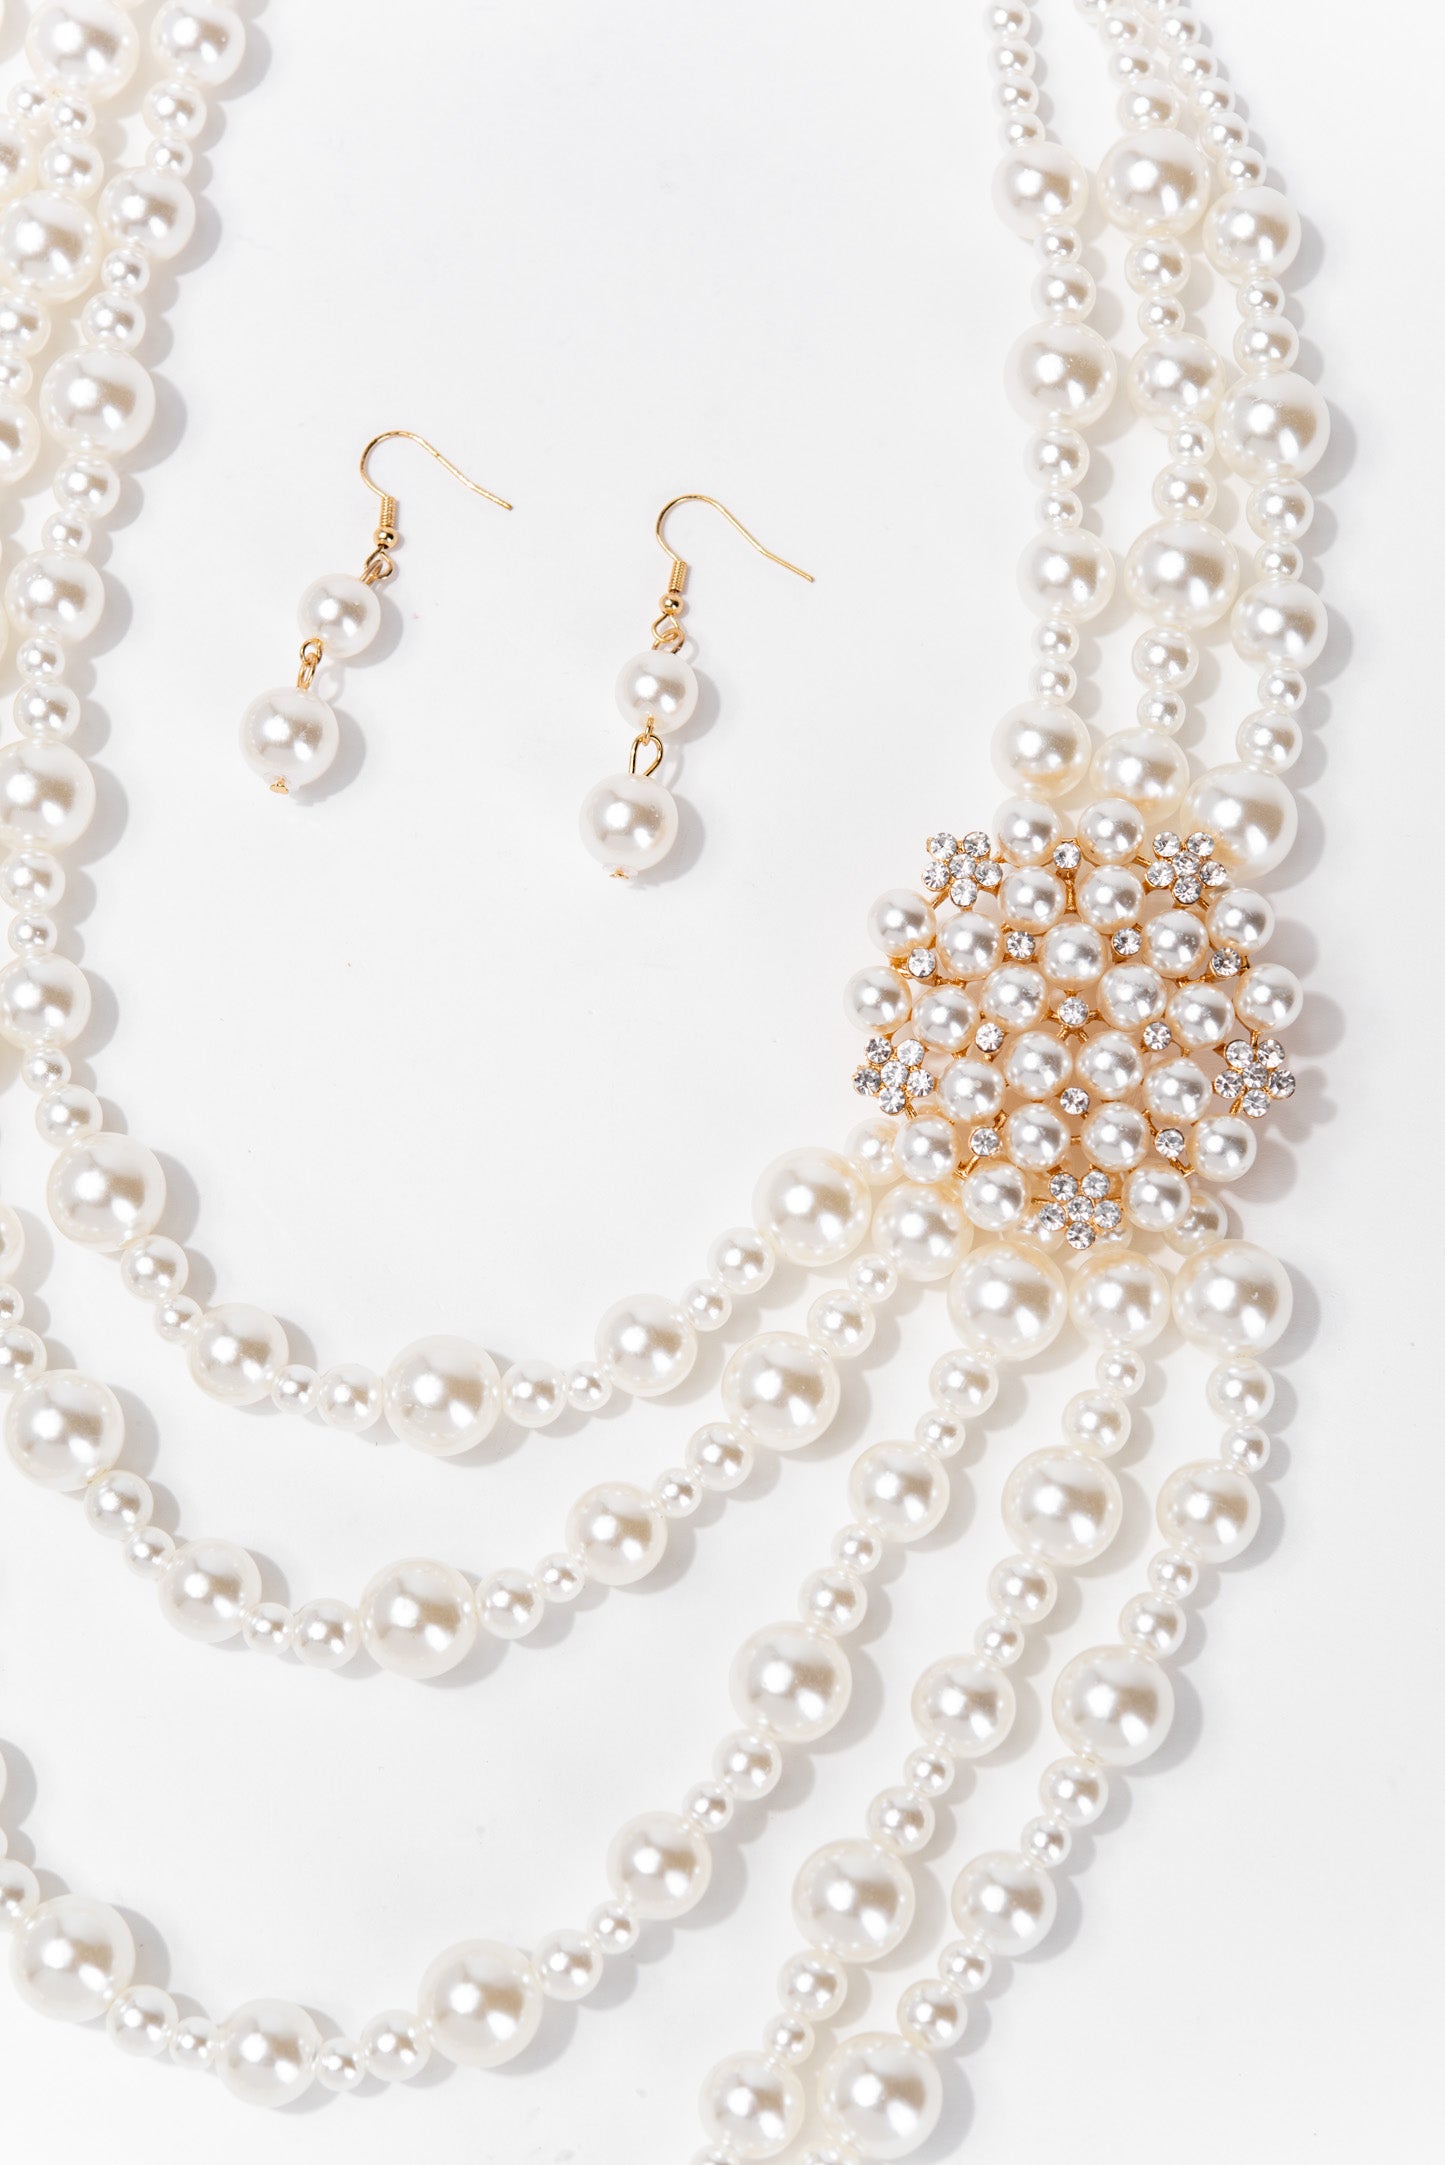 Summer Elegant Statement Pearl Necklace Set - Gold